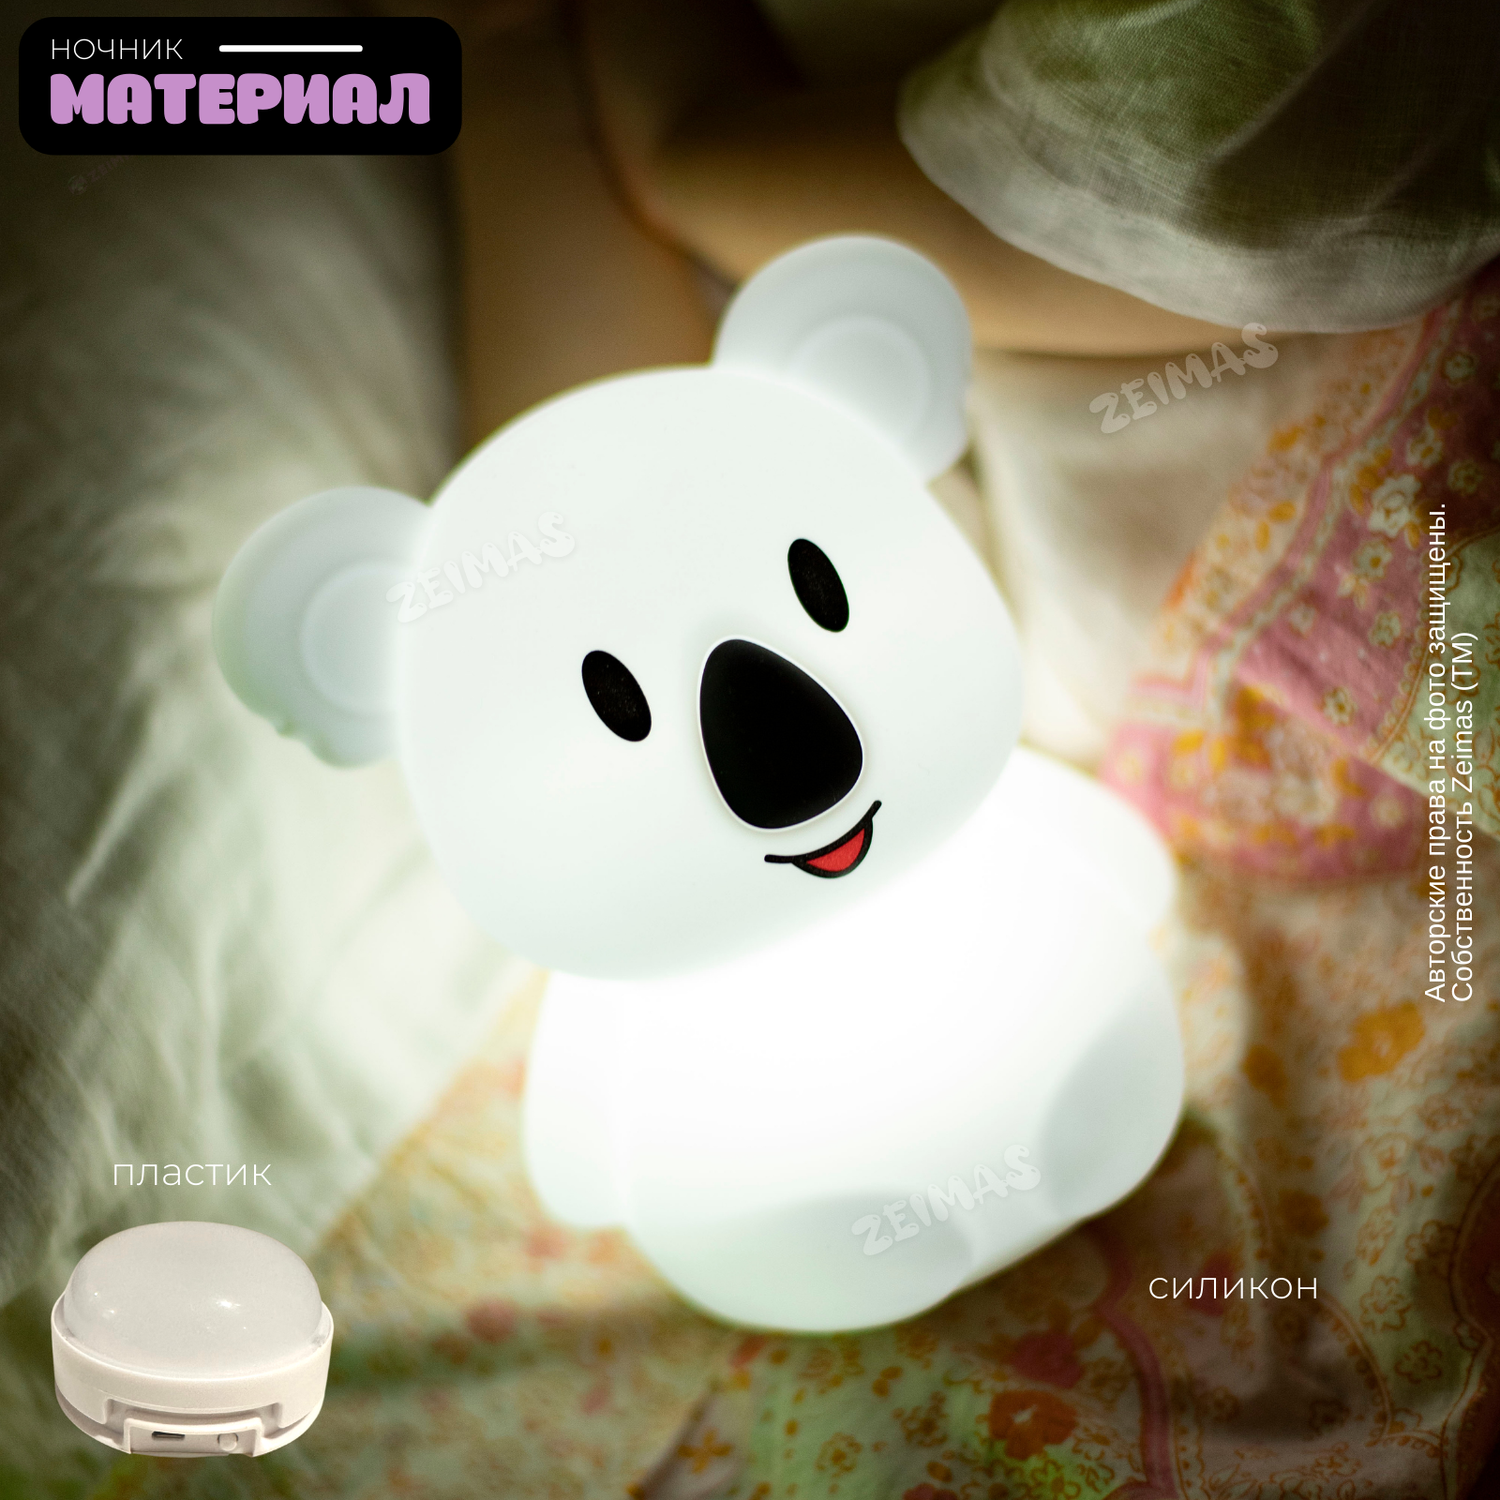 Ночник детский силиконовый Zeimas светильник игрушка Коала с пультом 9 цветов большой размер - фото 10